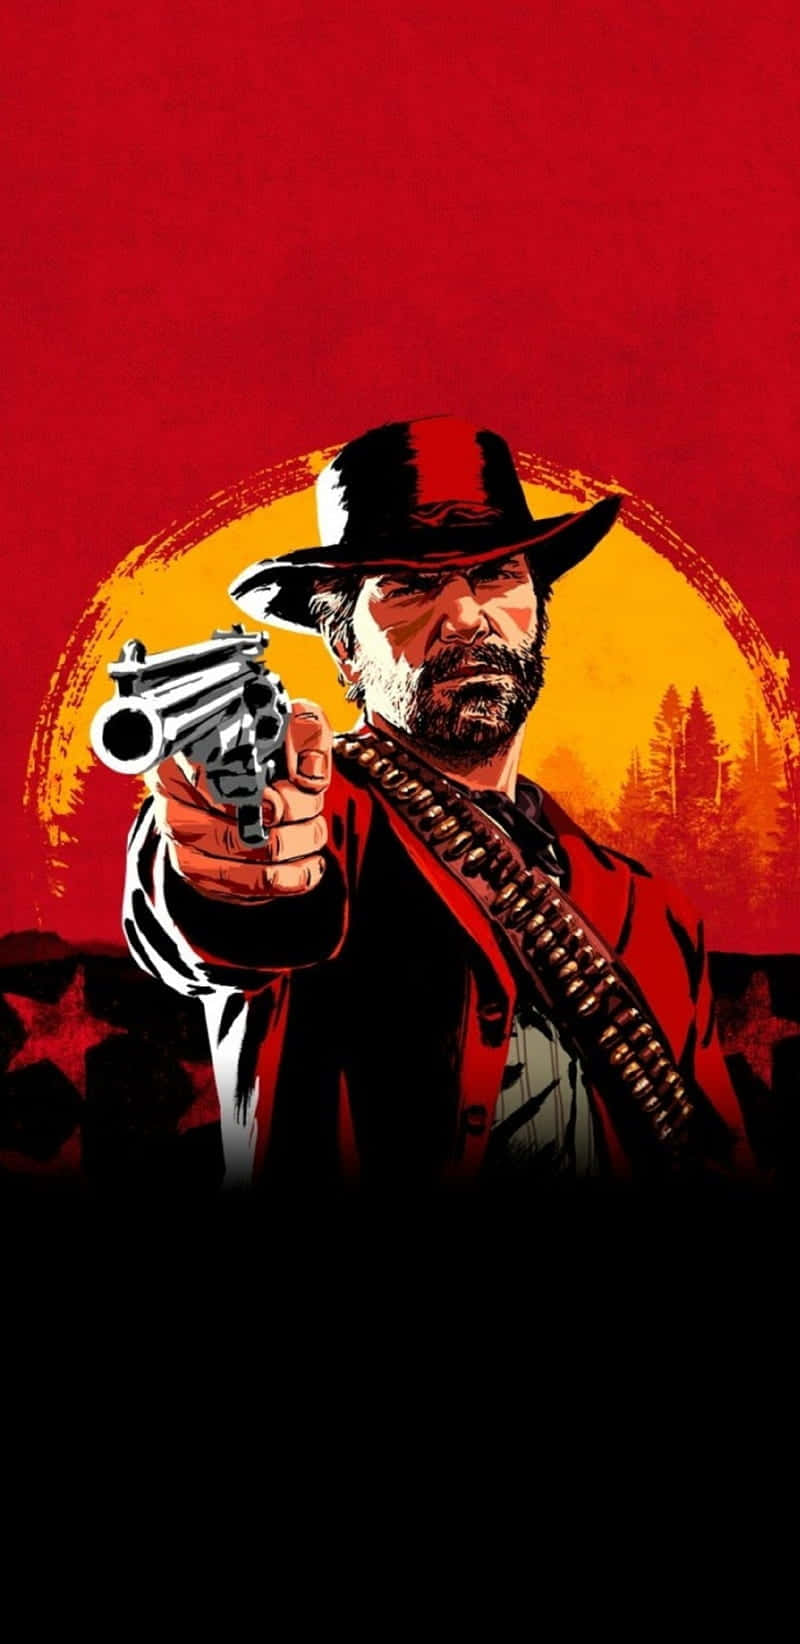 Migliorsfondo Di Red Dead Redemption 2 Con Arthur Morgan Mirando La Pistola.